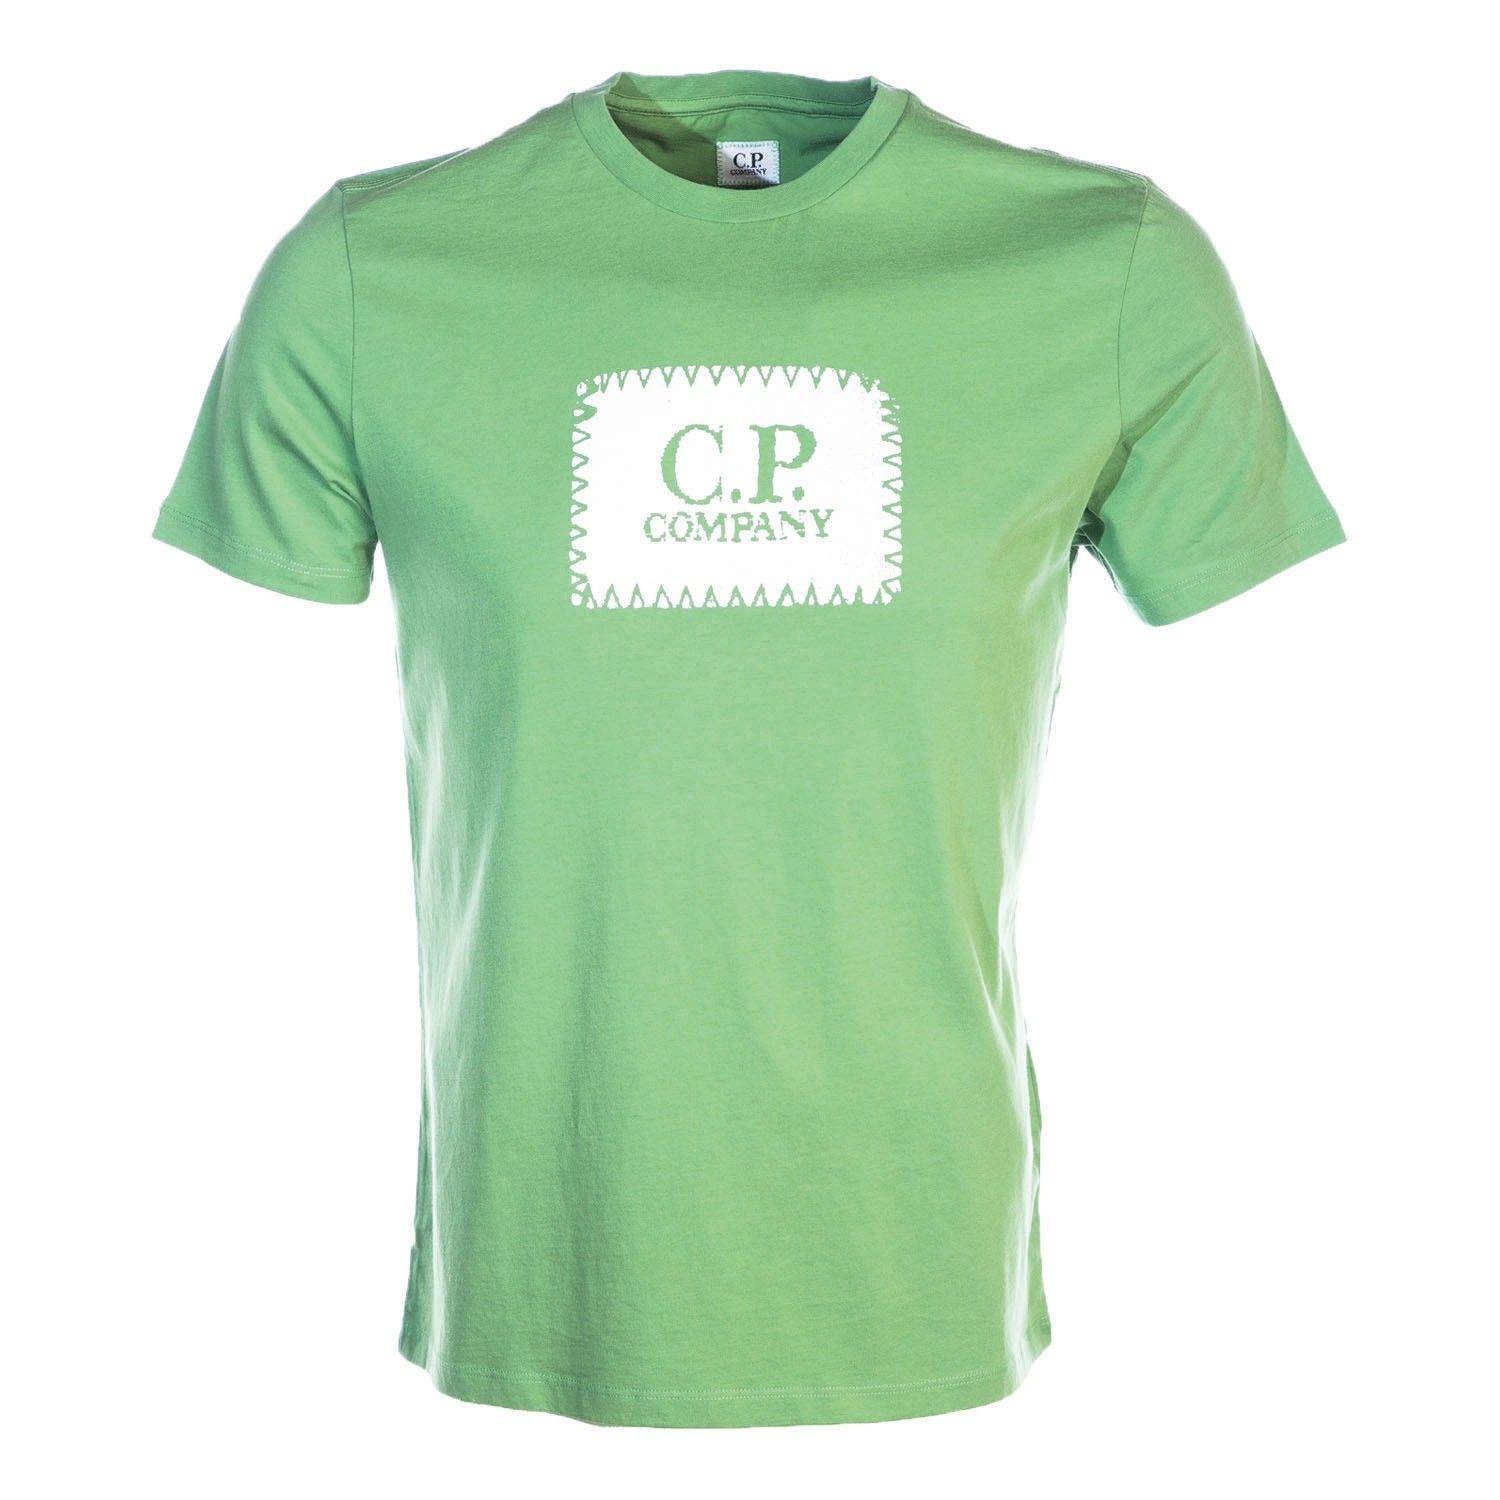 Company with Green Box Logo - CP Company Box Logo T Shirt in Kiwi I CP Company I Norton Barrie